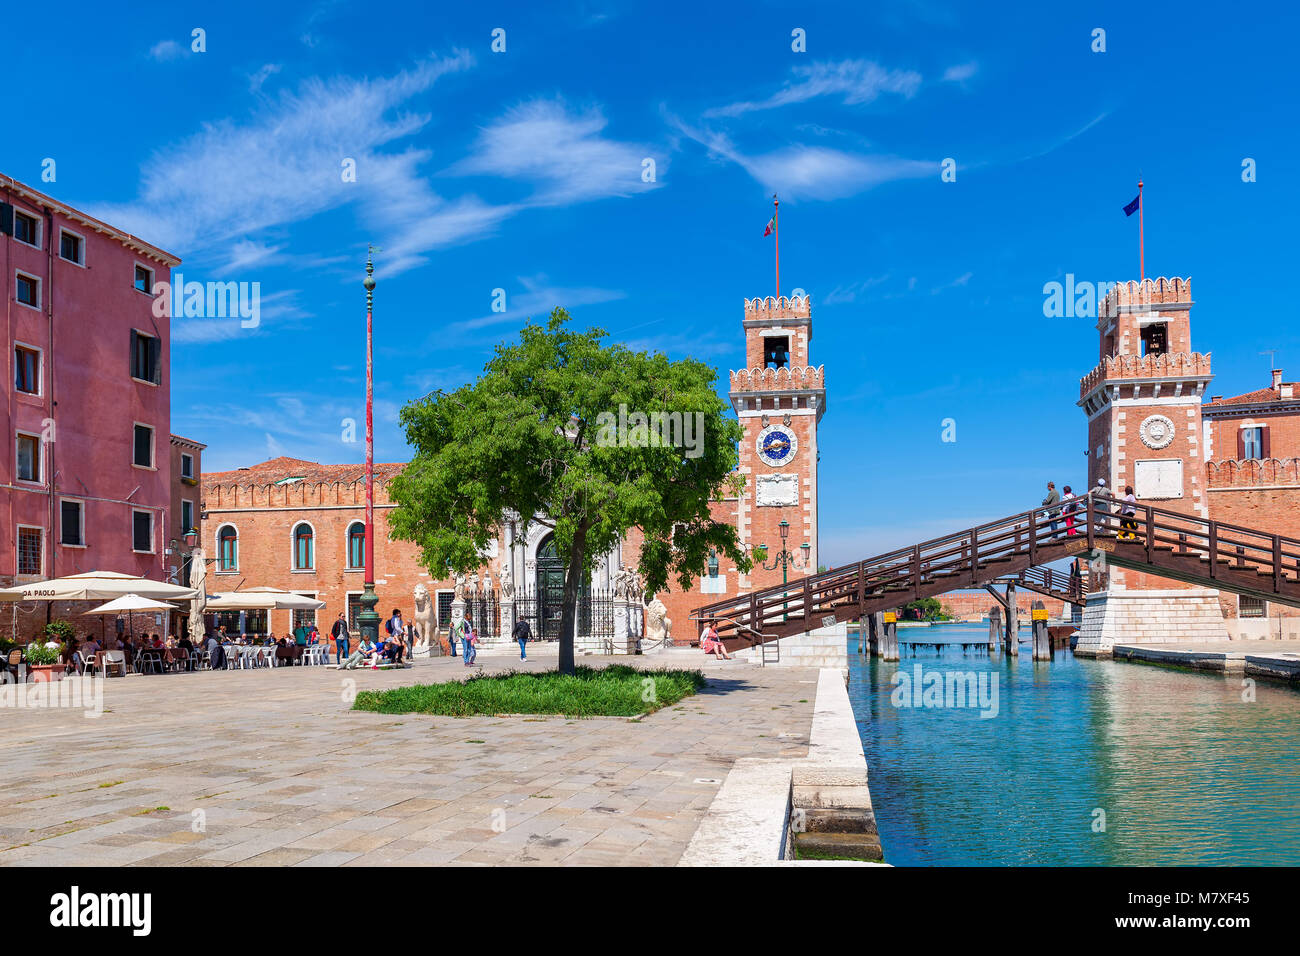 Venezia, Italia: Vista di torri e il ponte del famoso Arsenale Veneziano - complesso di ex cantieri e armory, attualmente la base navale e museo. Foto Stock